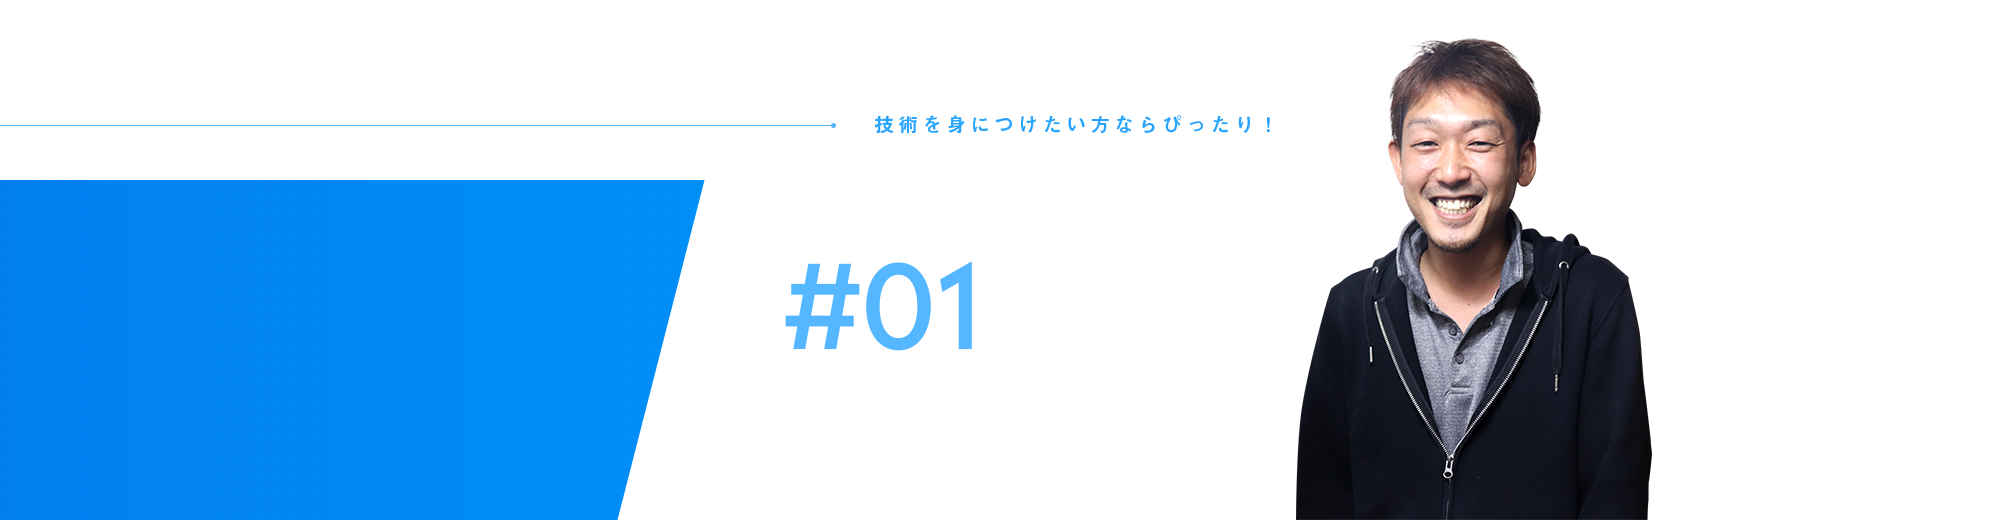 従業員インタビュー#01